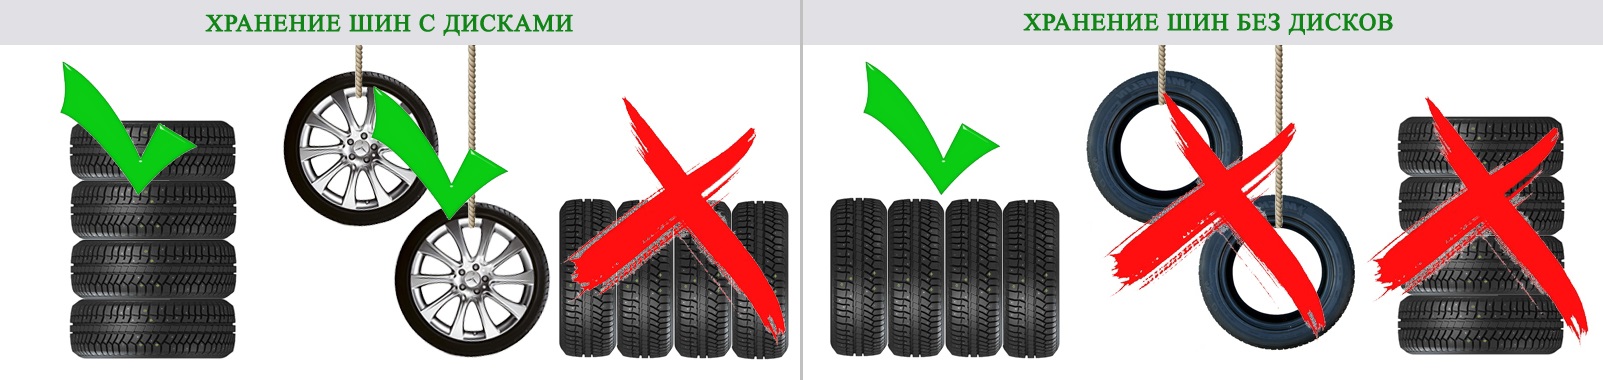 Правильное хранение шин и колес